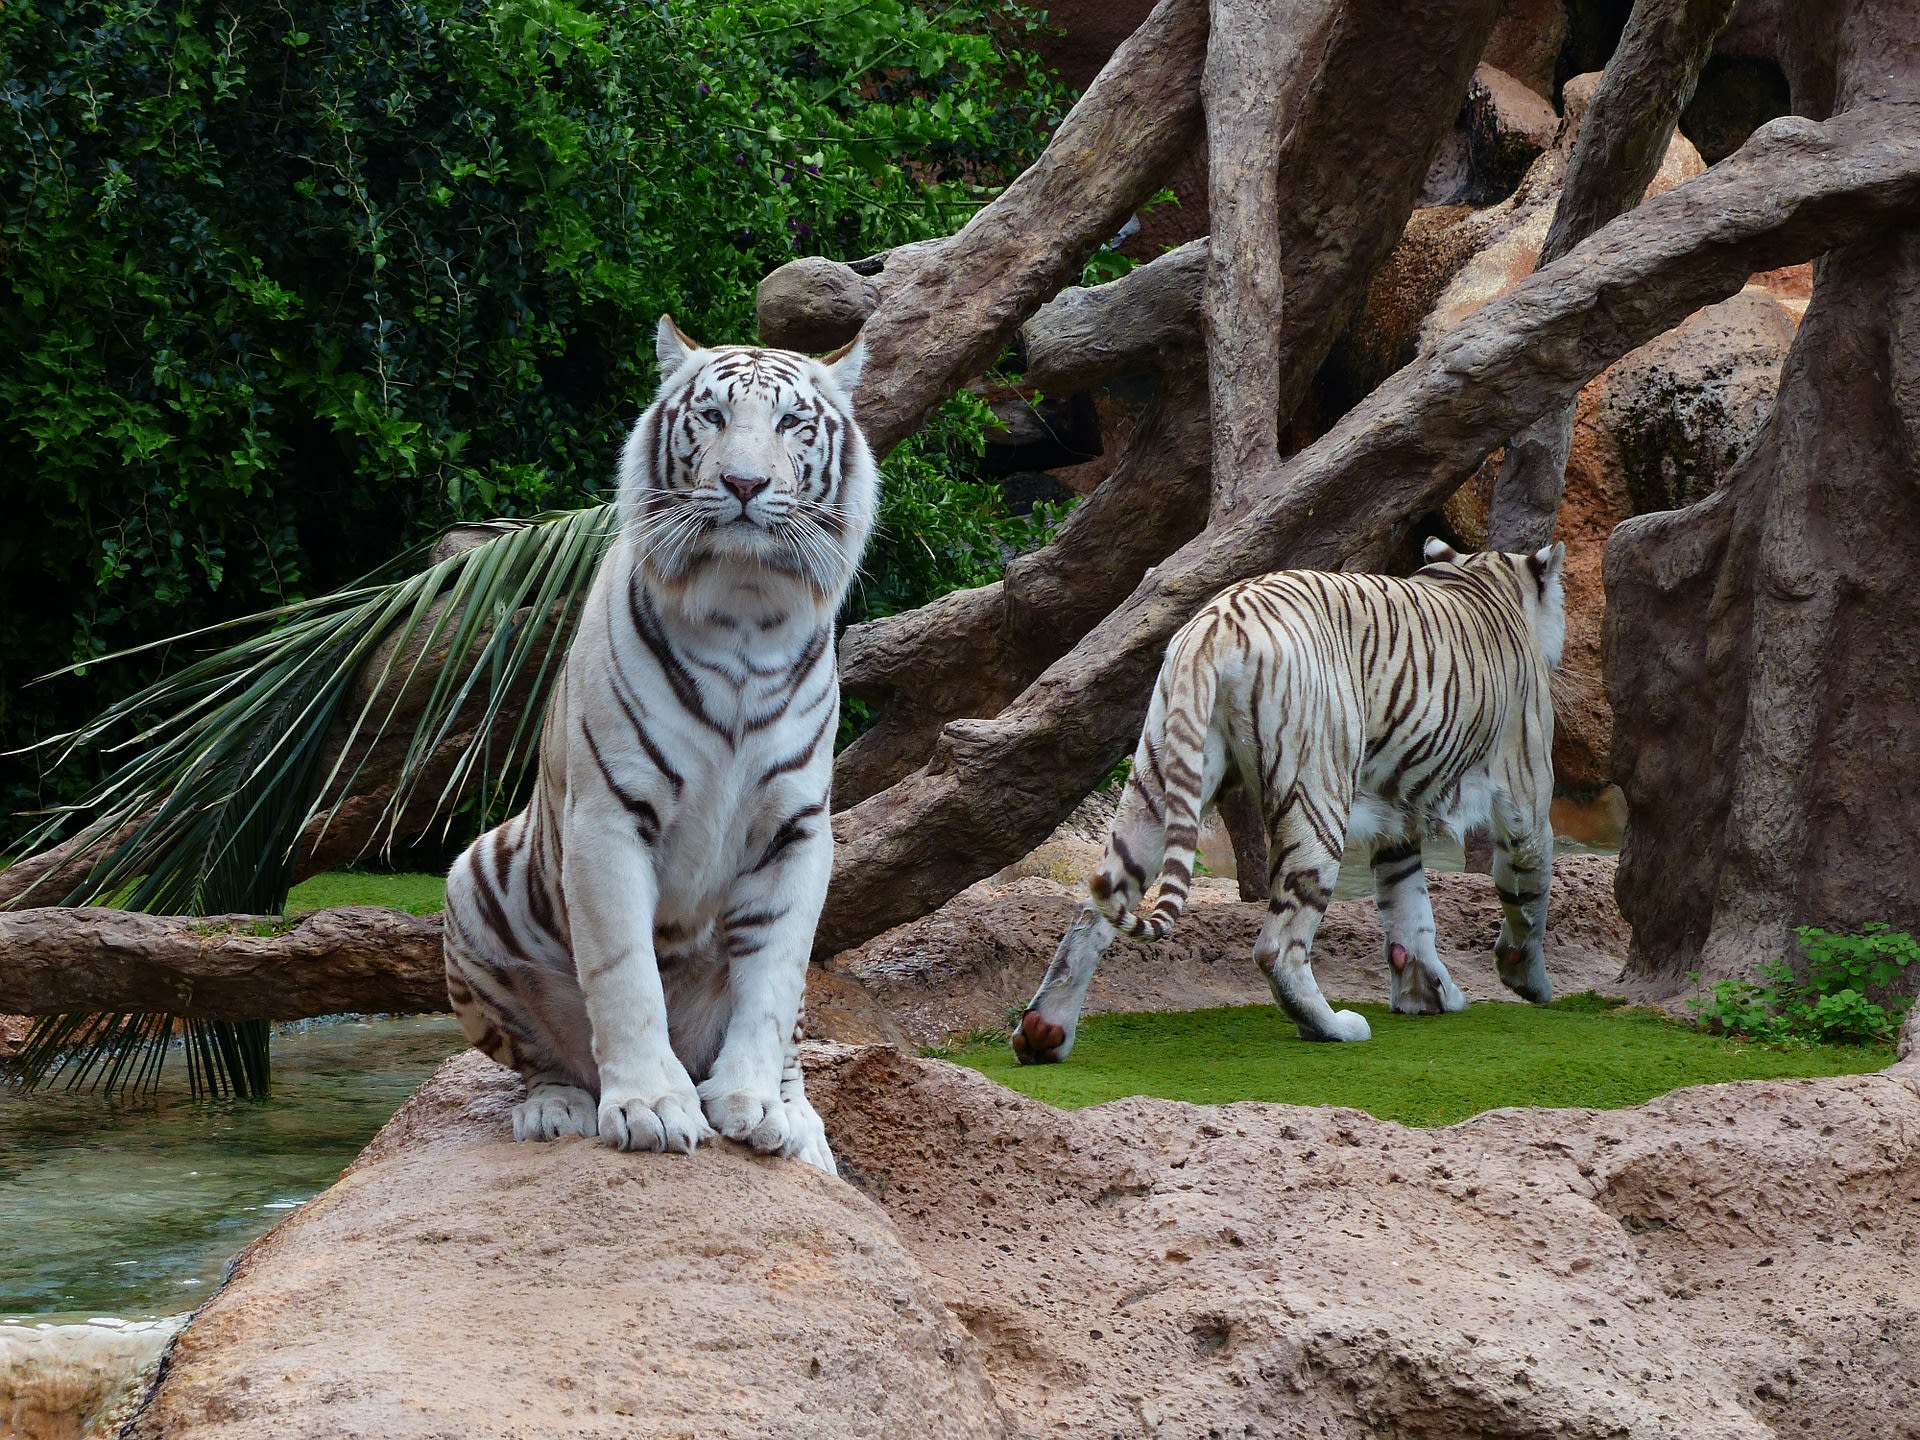 Tygři jsou oblíbenou atrakcí v zoologických zahradách a zábavních parcích. I proto jsou přešlechťováni a trpí zdravotními problémy.